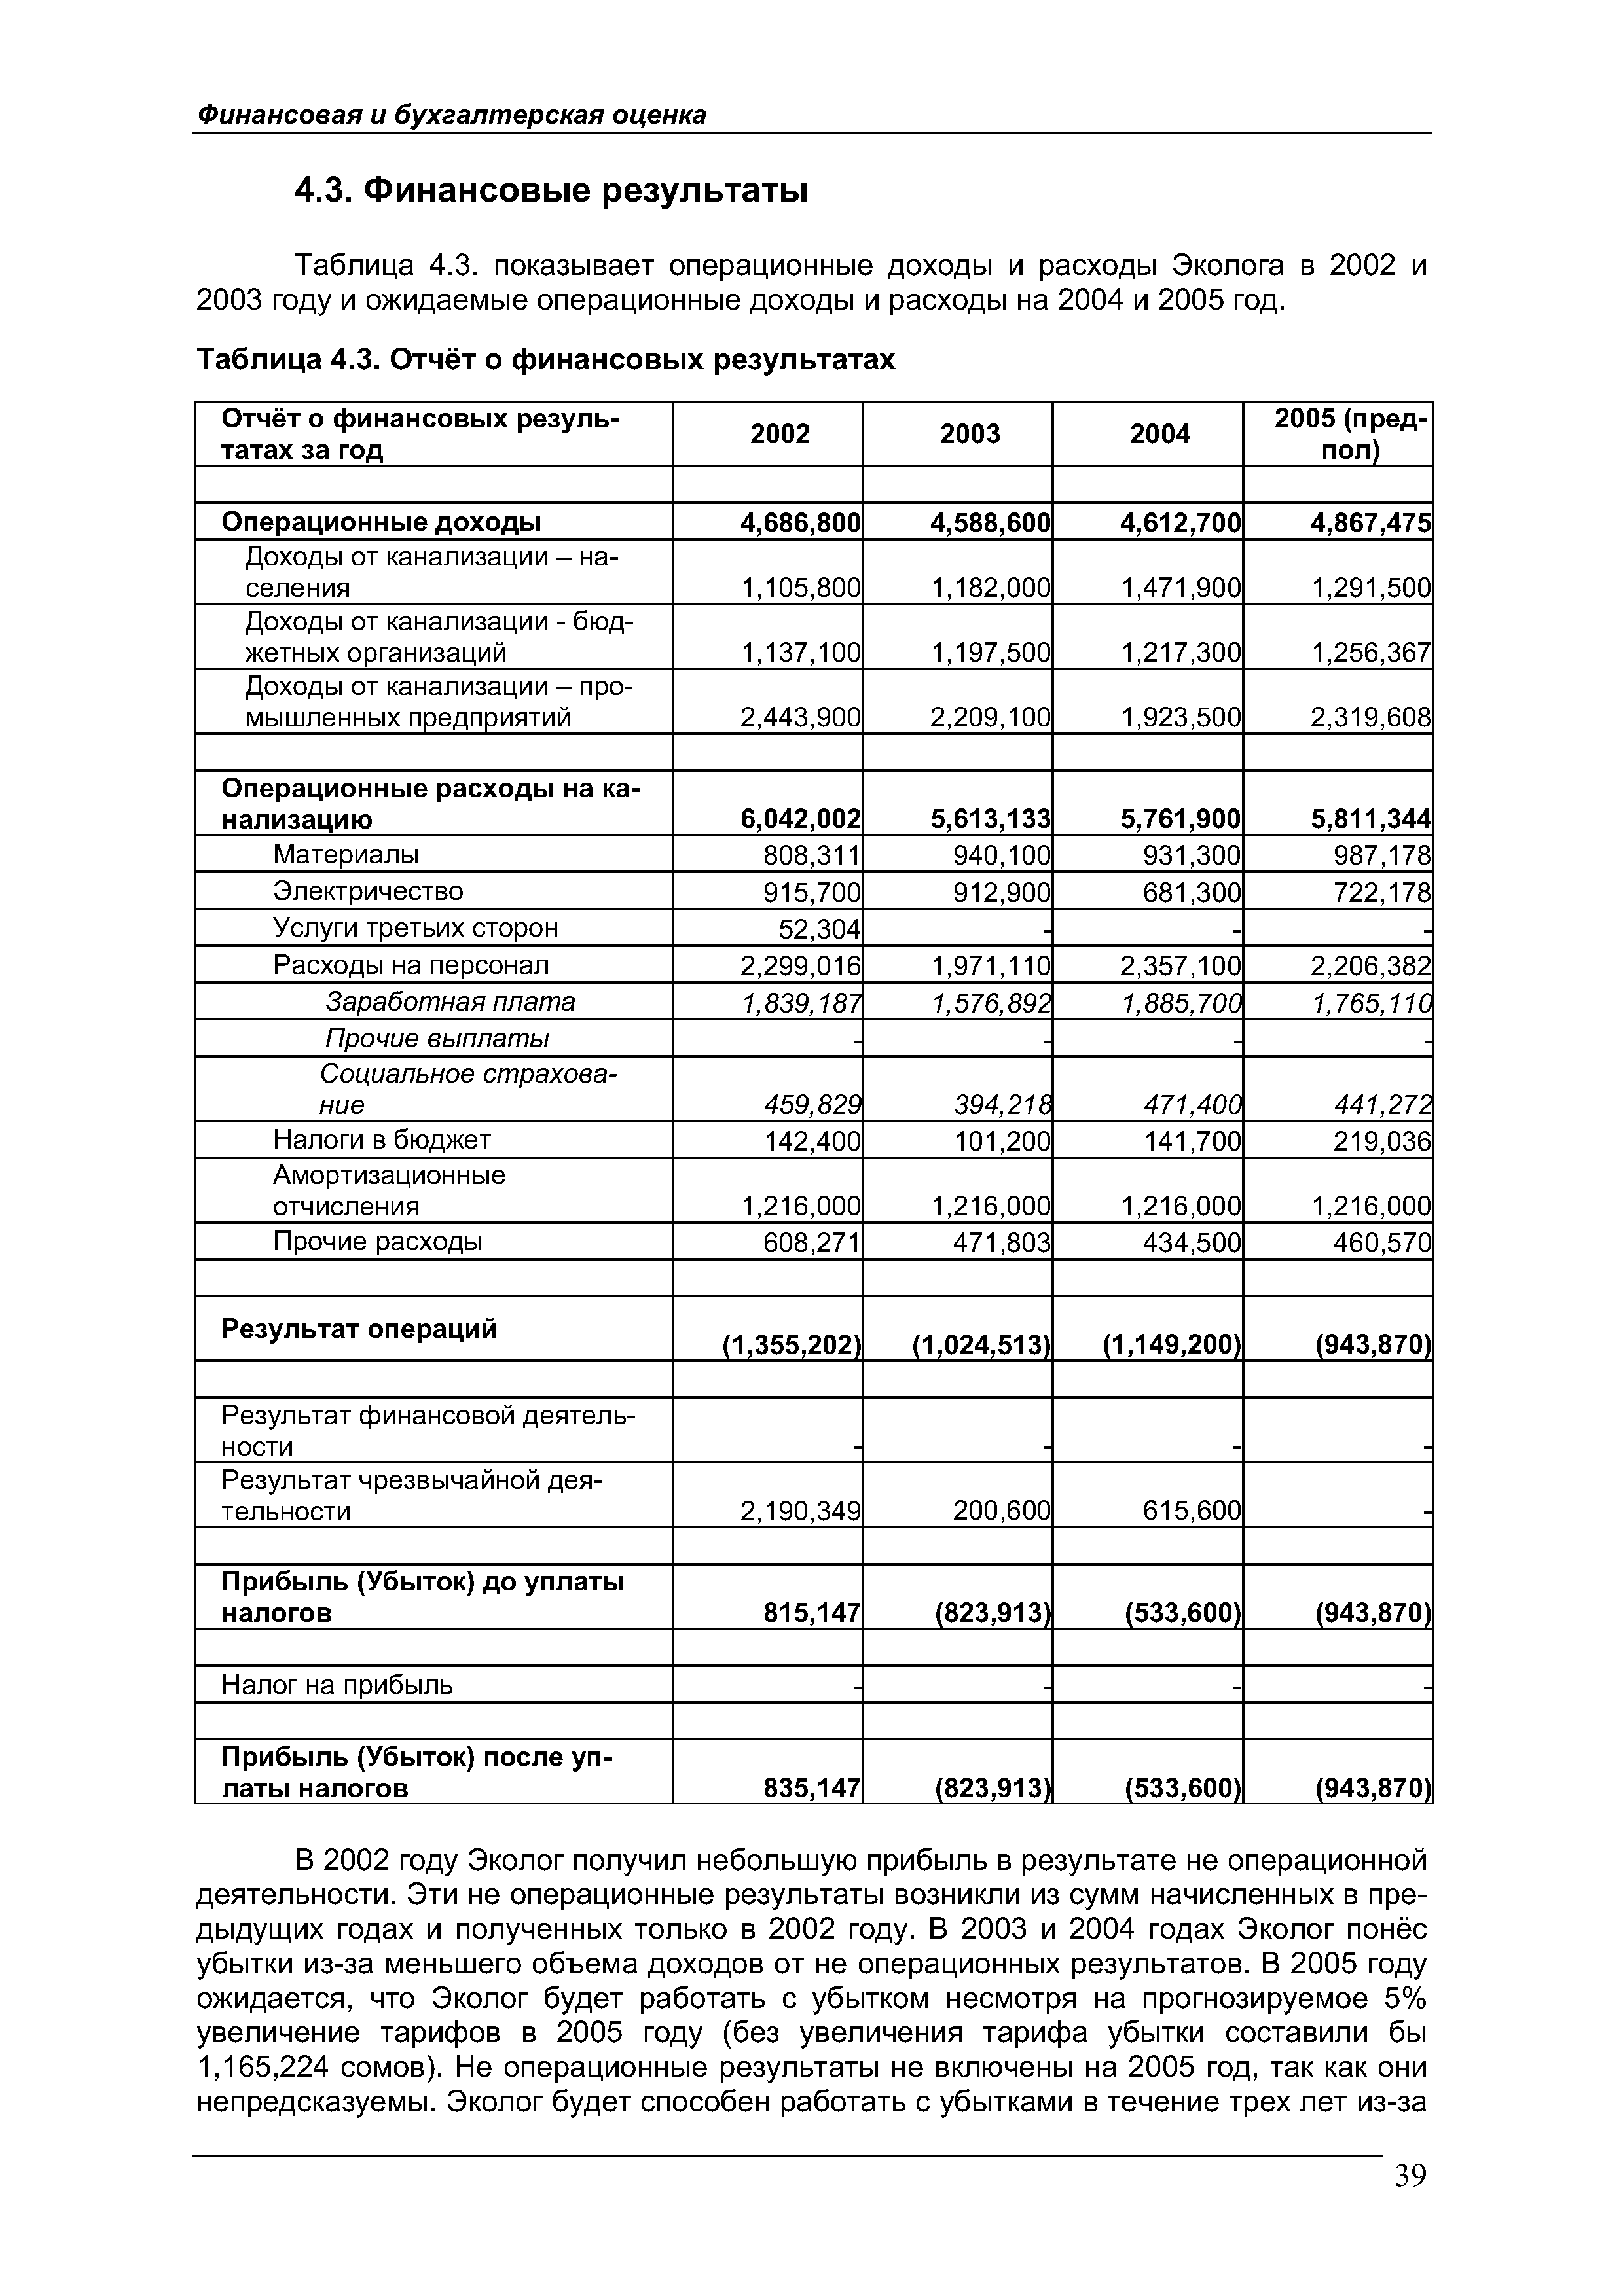 Таблица 4.3. Отчёт о финансовых результатах
